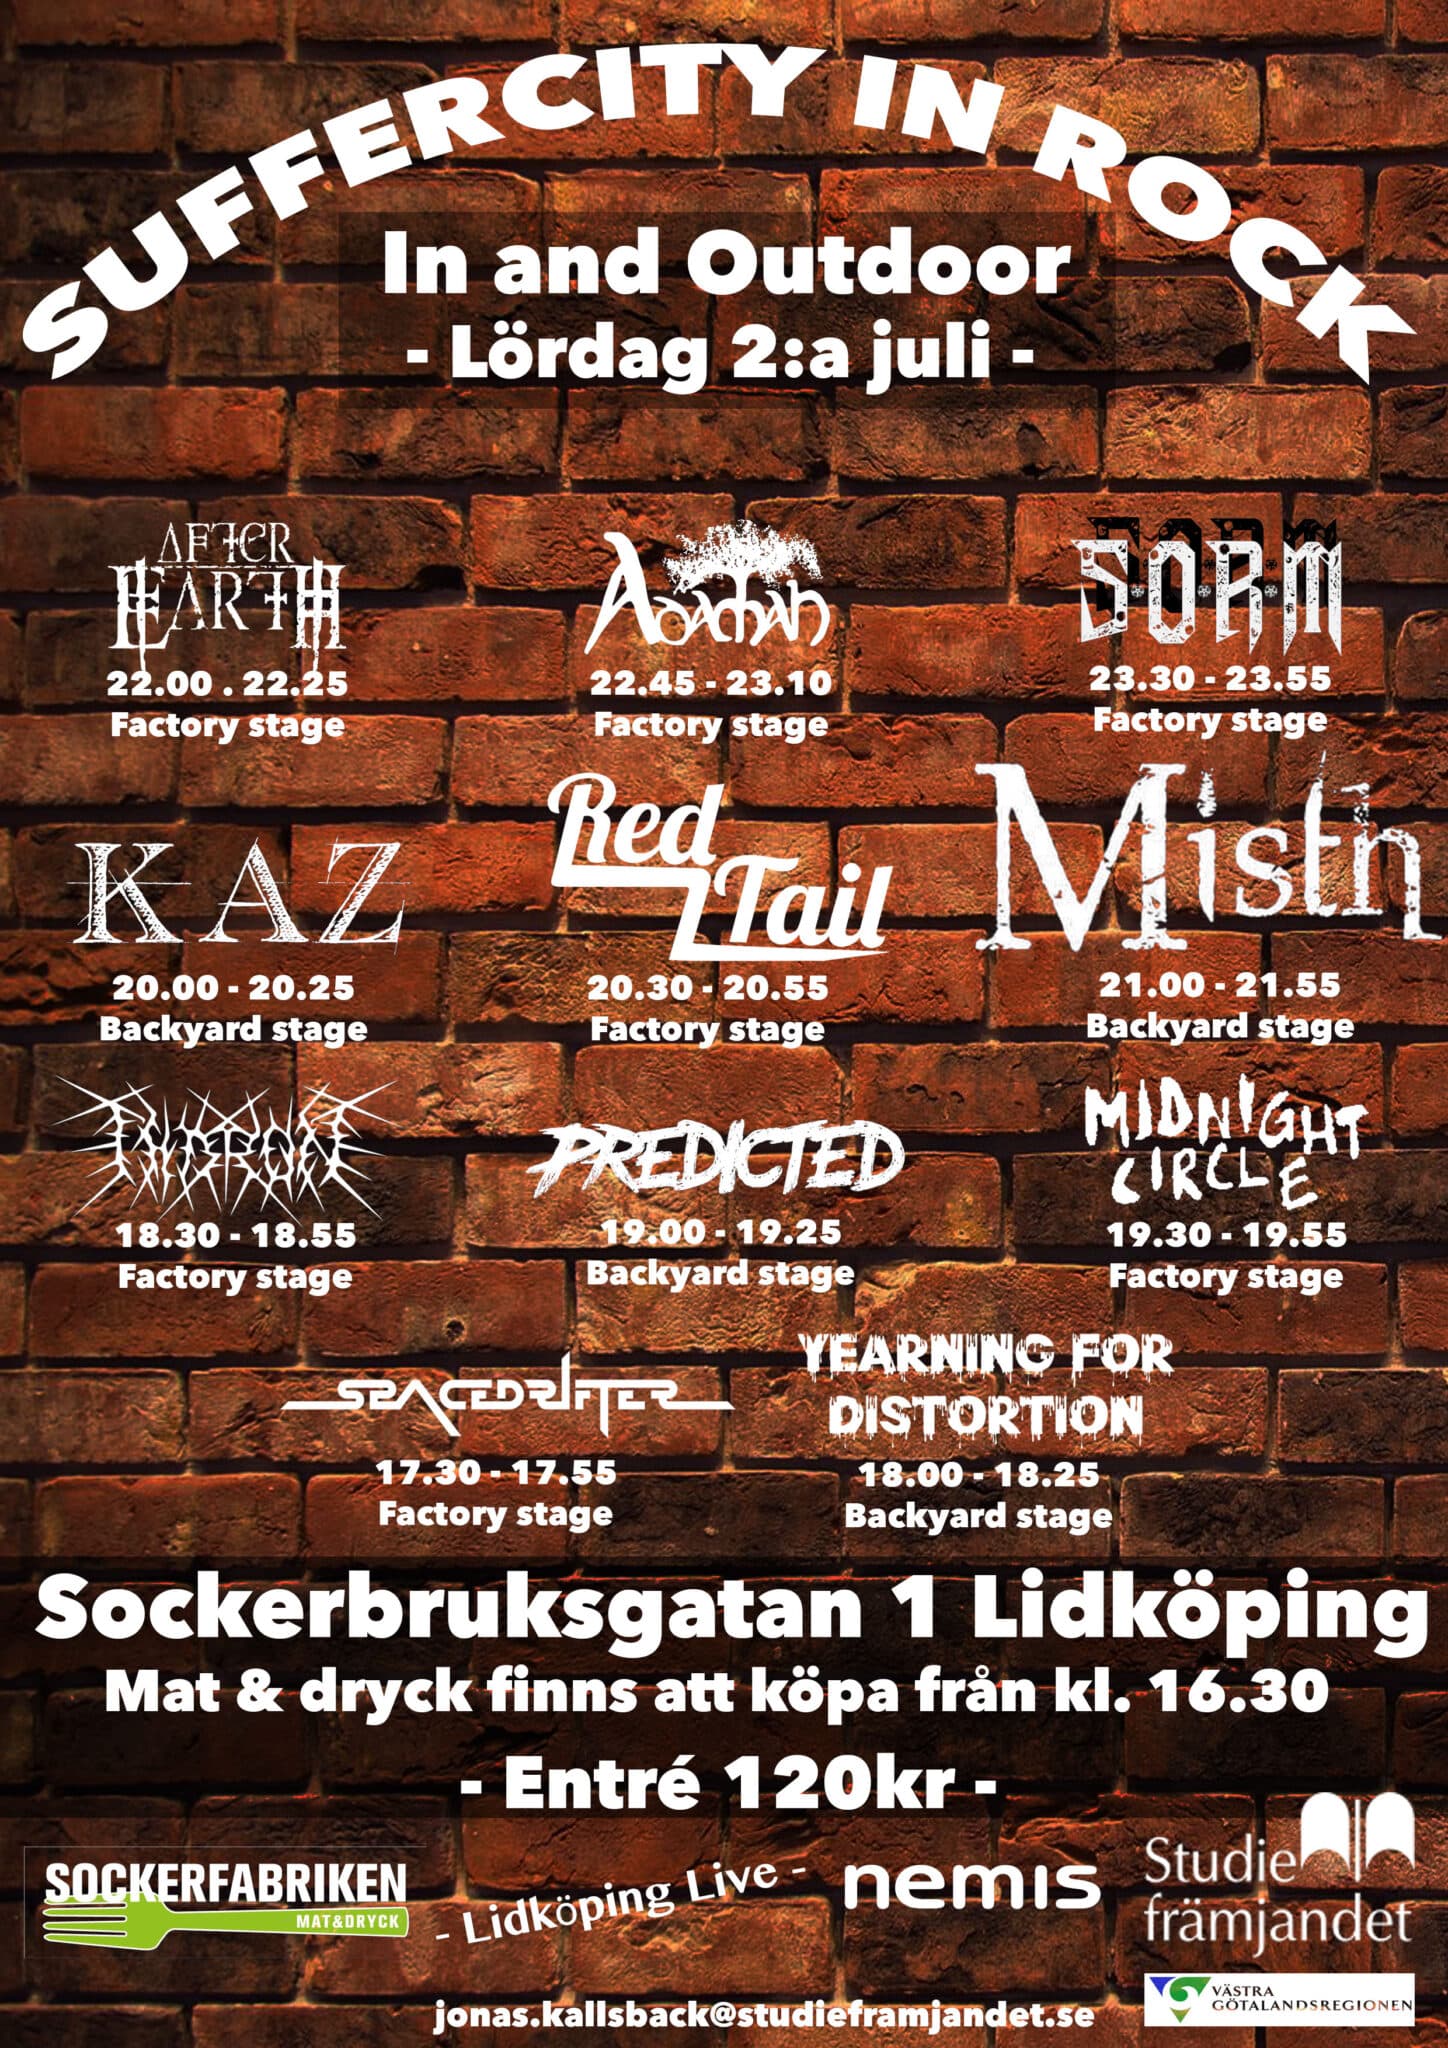 SufferCity In Rock i Lidköping arrangeras på lördag 1